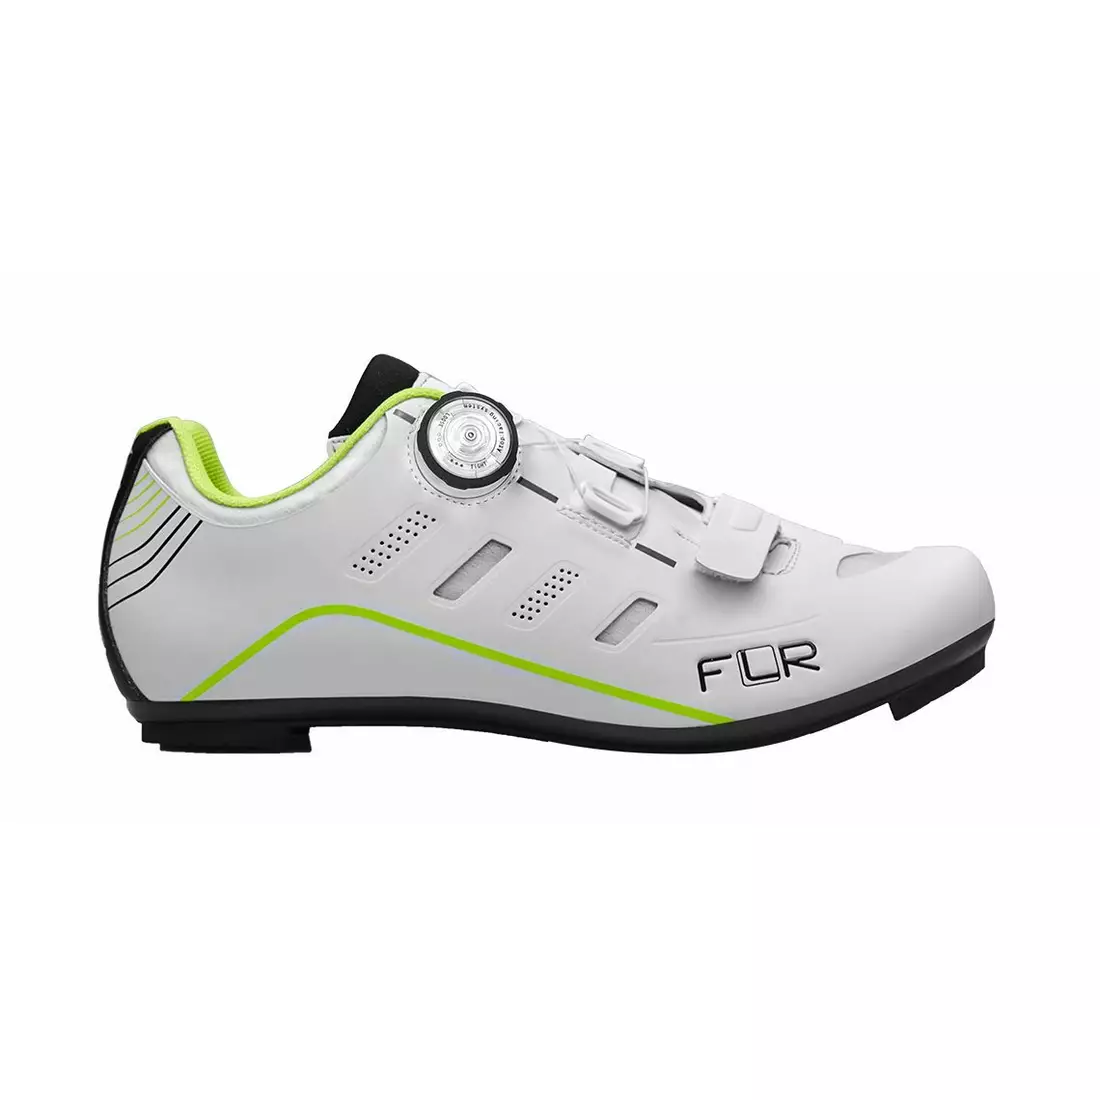 FLR F-22 silniční cyklistická obuv, bílý fluor